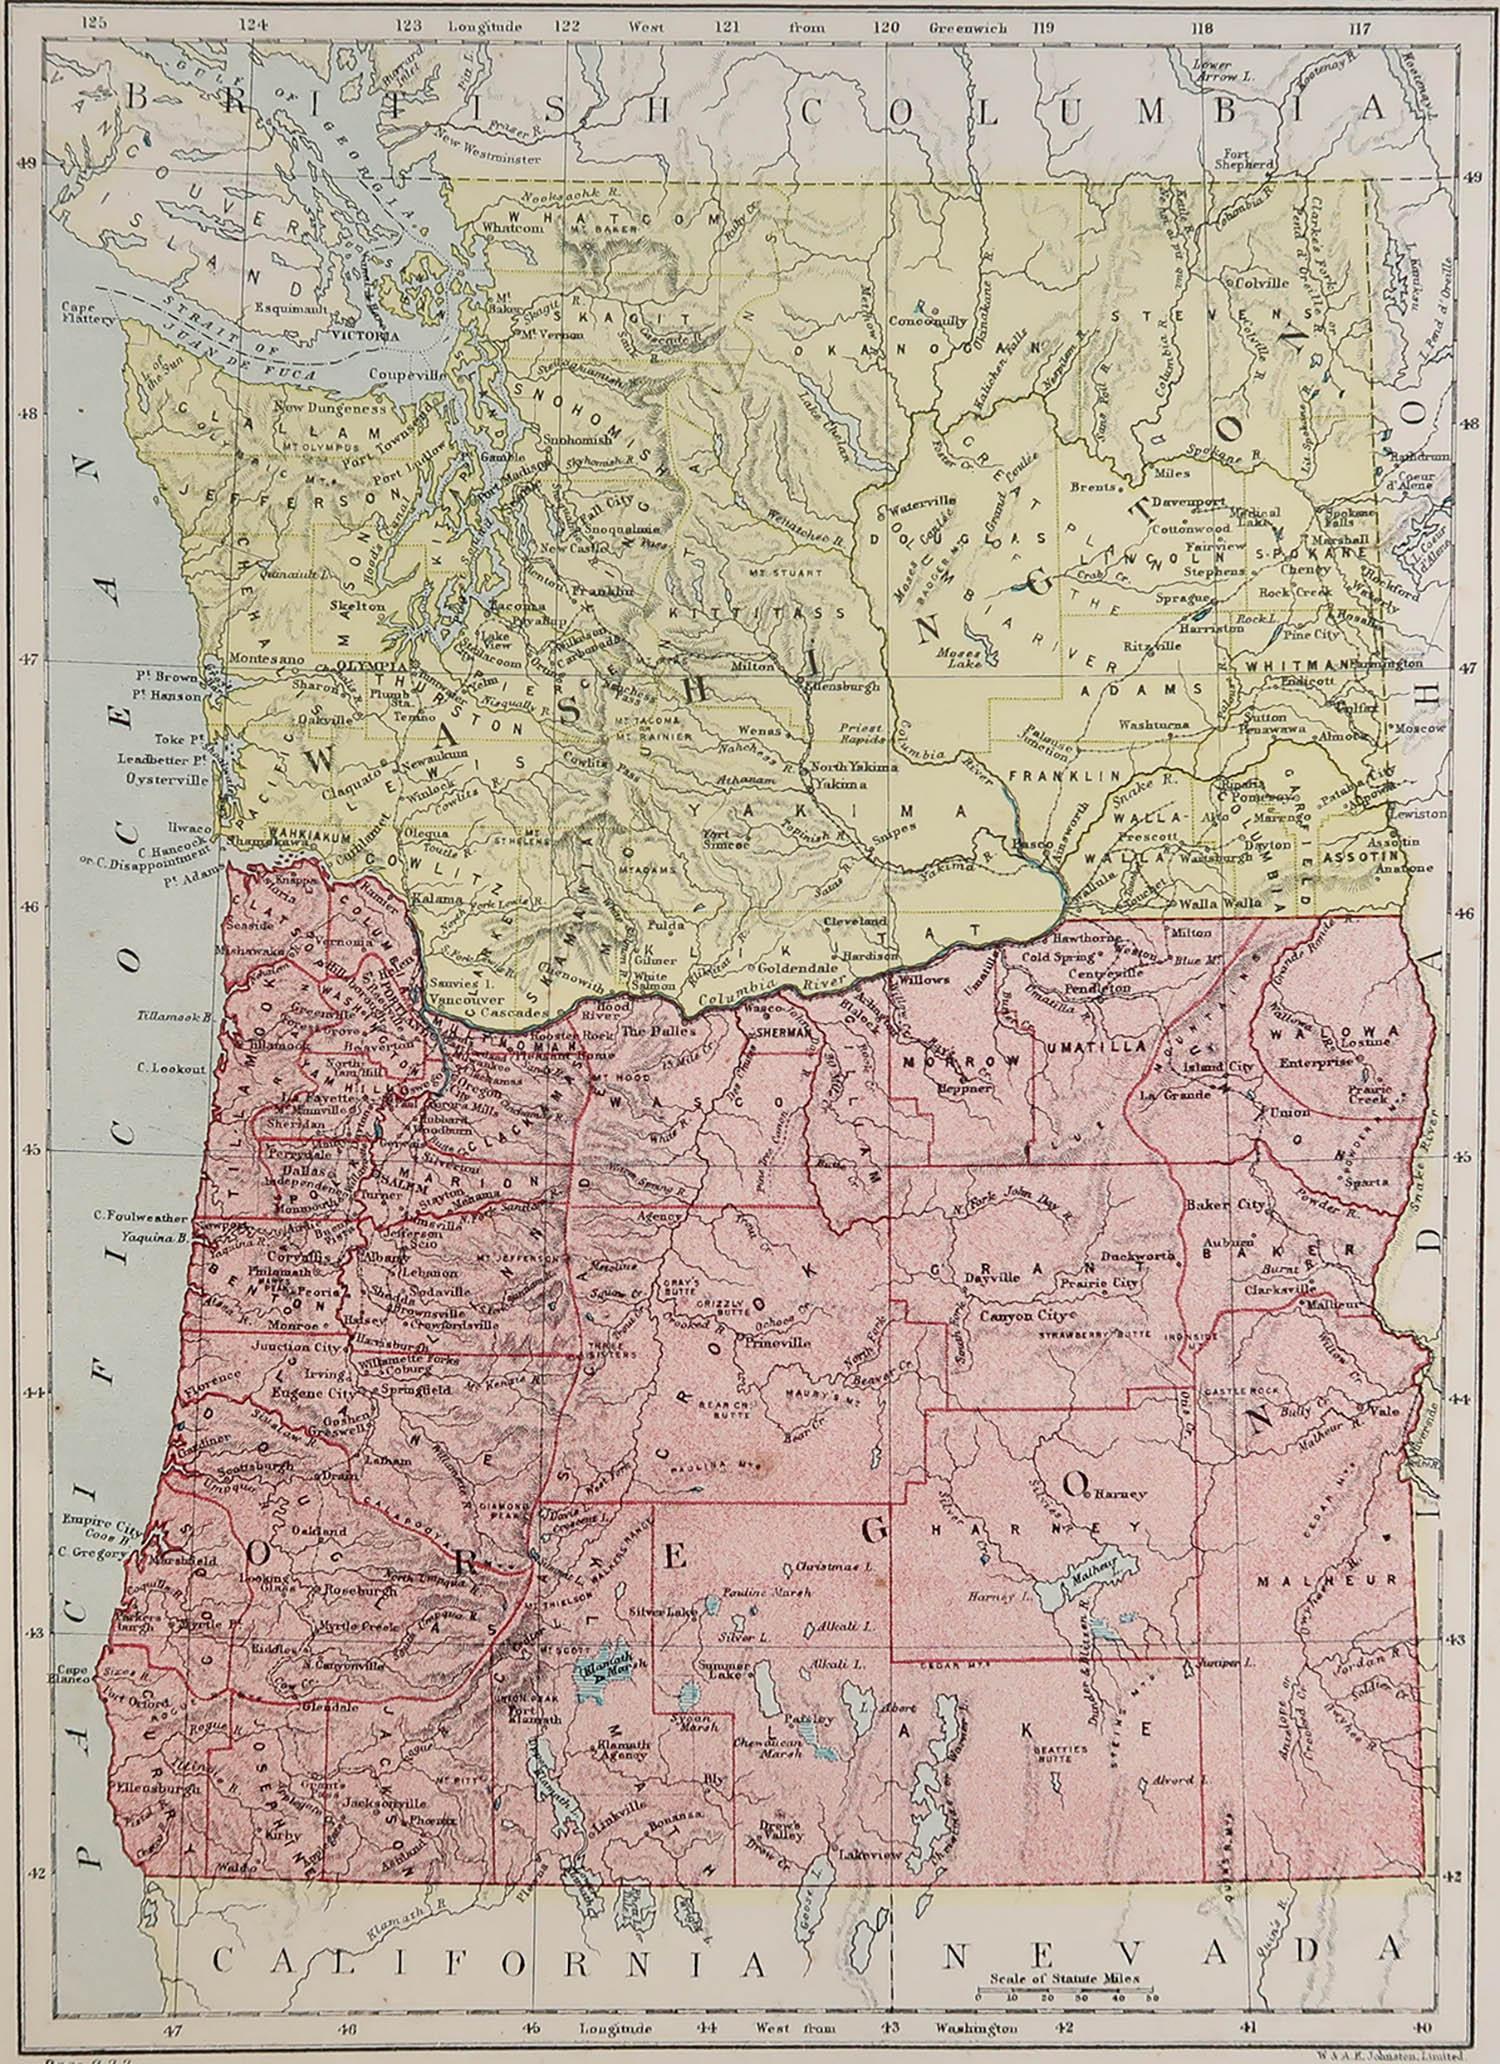 Excellente carte de l'Oregon

Dessiné et gravé par W. & K.K. Johnston

Publié par A.I.C. C., Edinburgh.

Couleur originale

Non encadré.








